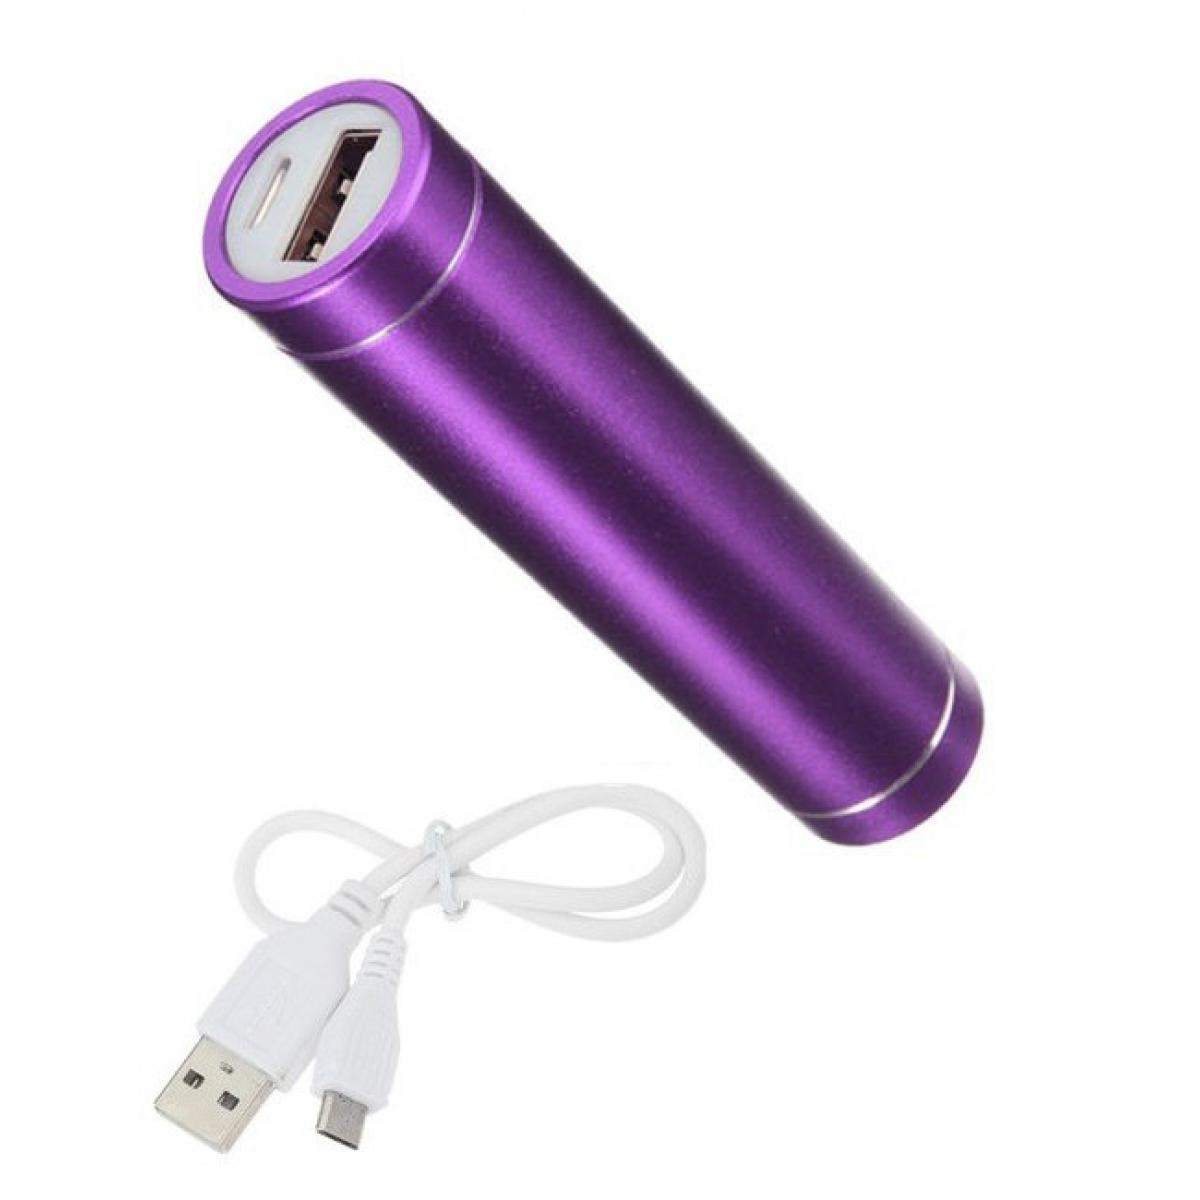 Shot - Batterie Chargeur Externe pour "OPPO Find X2 Lite" Power Bank 2600mAh avec Cable USB/Mirco USB Secours Telephone (VIOLET) - Chargeur secteur téléphone